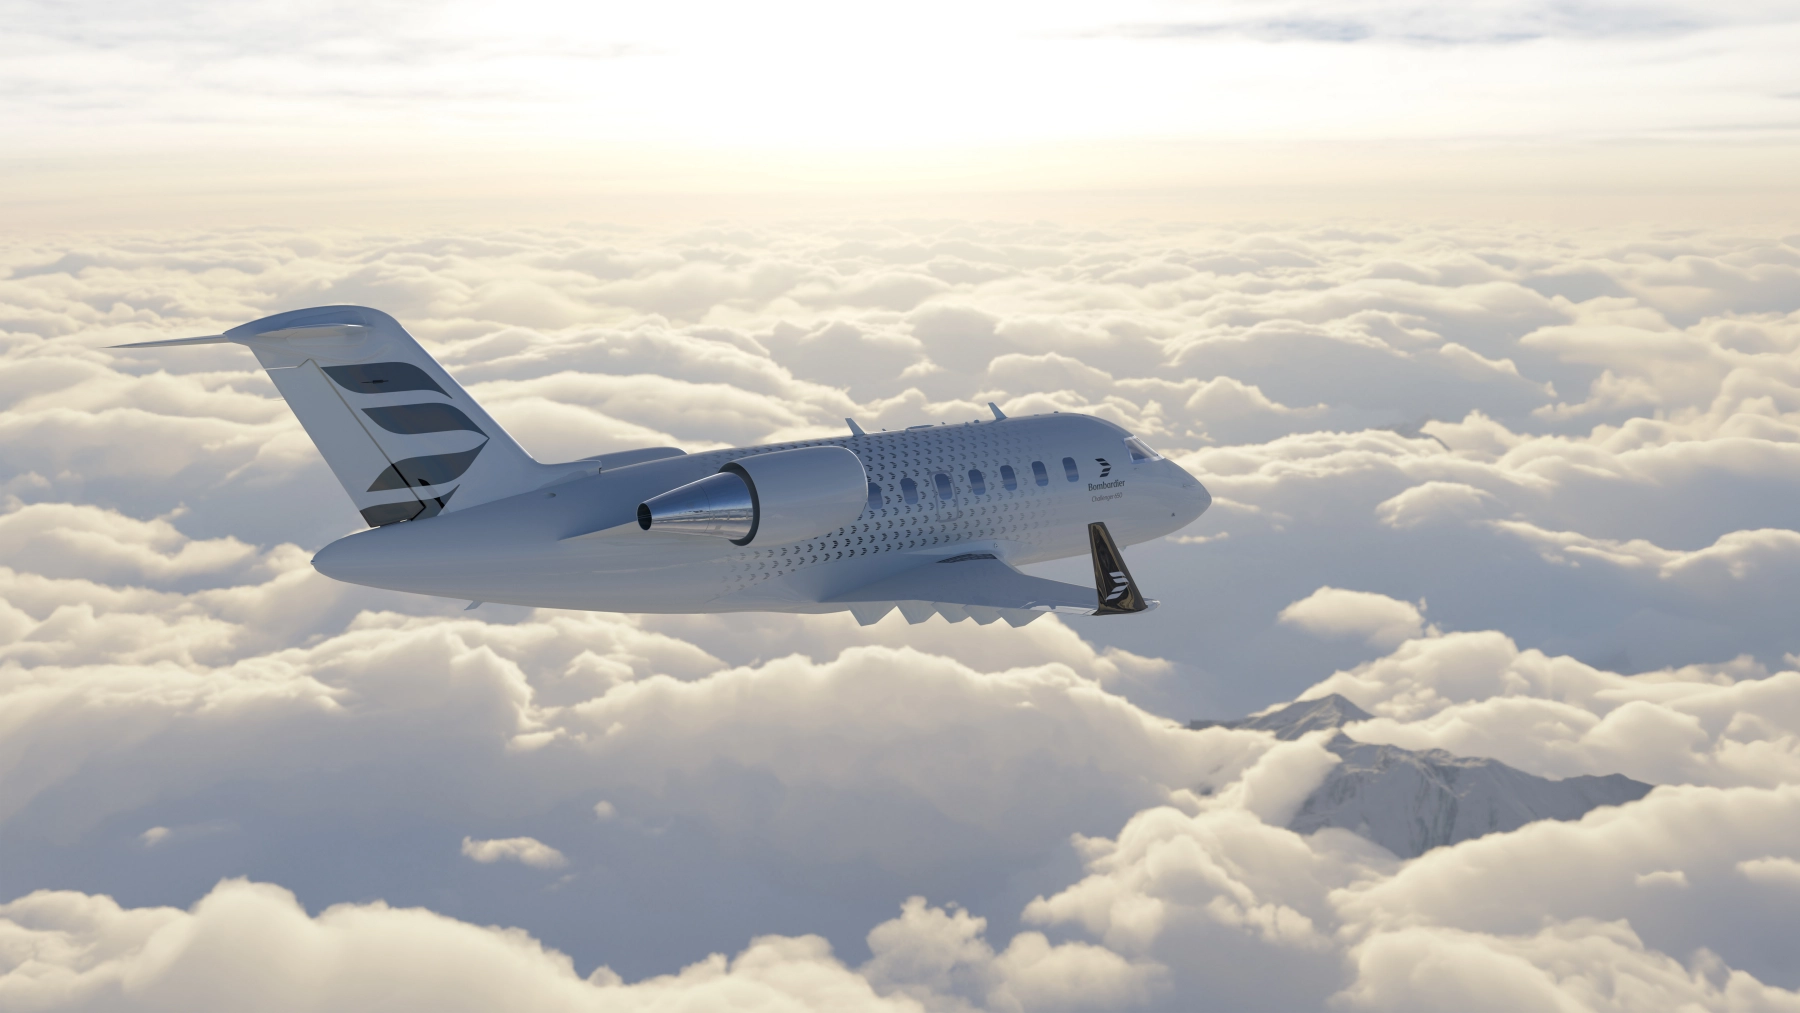 Avion de type Bombardier Challenger avec le nouveau logo de Bombardier.